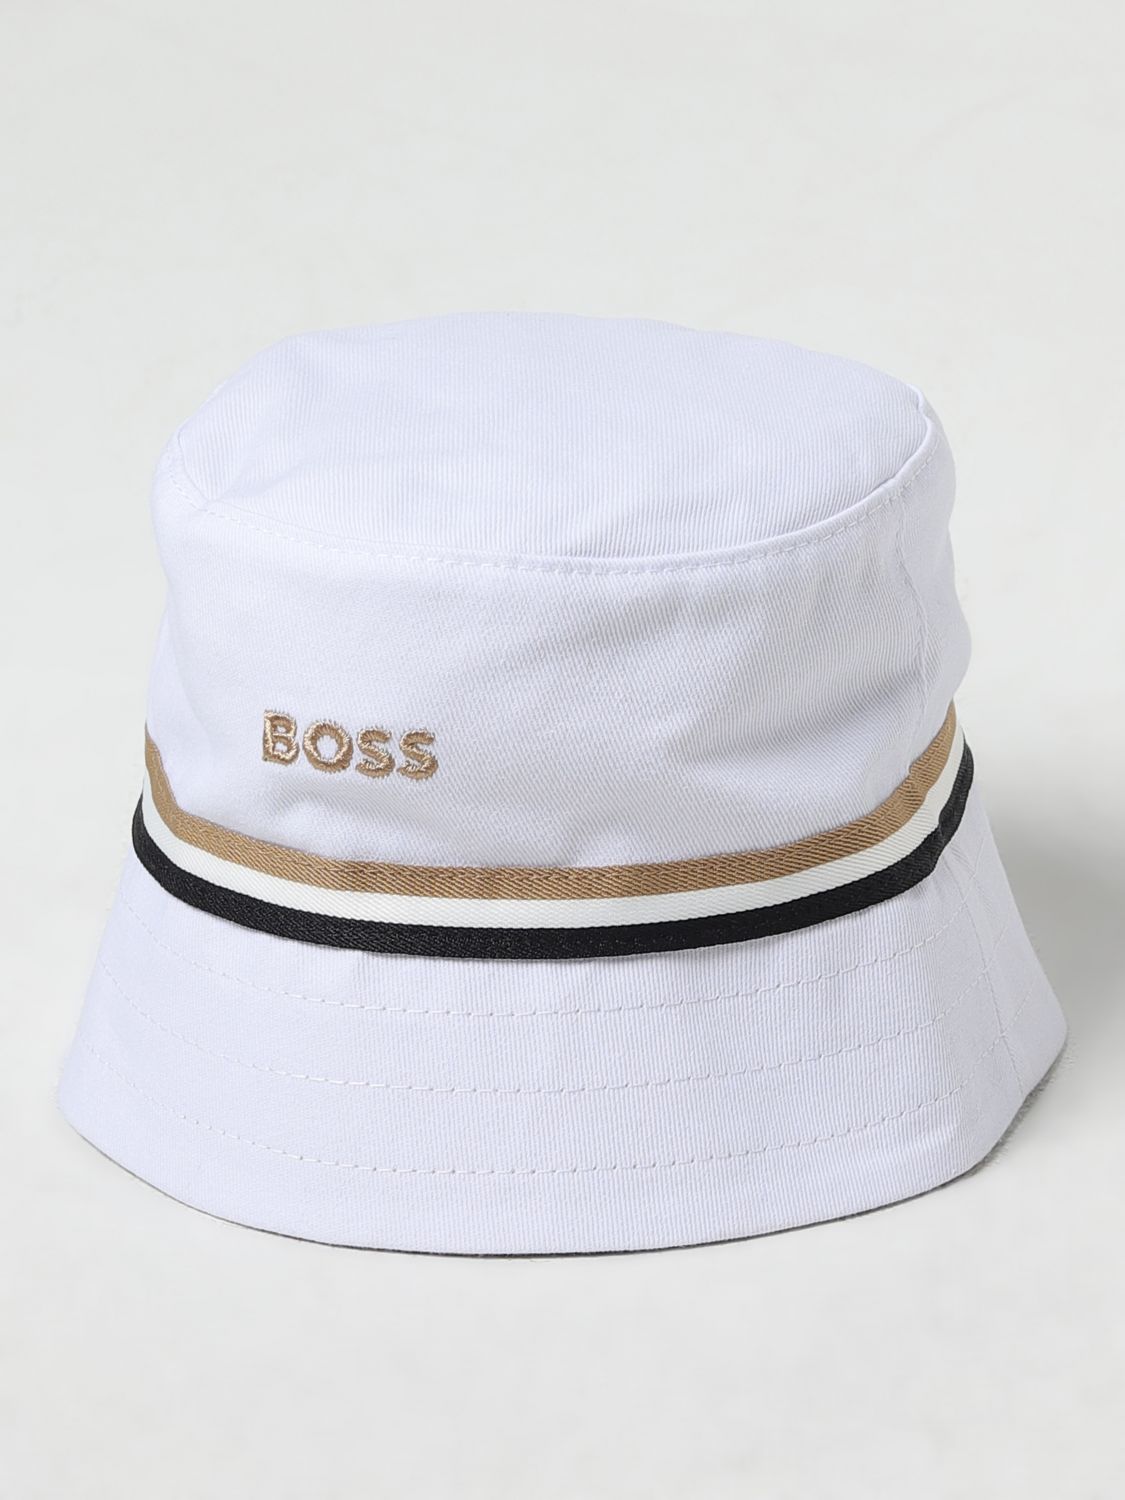 Bosswear Hat Boss Kidswear Kids Color White